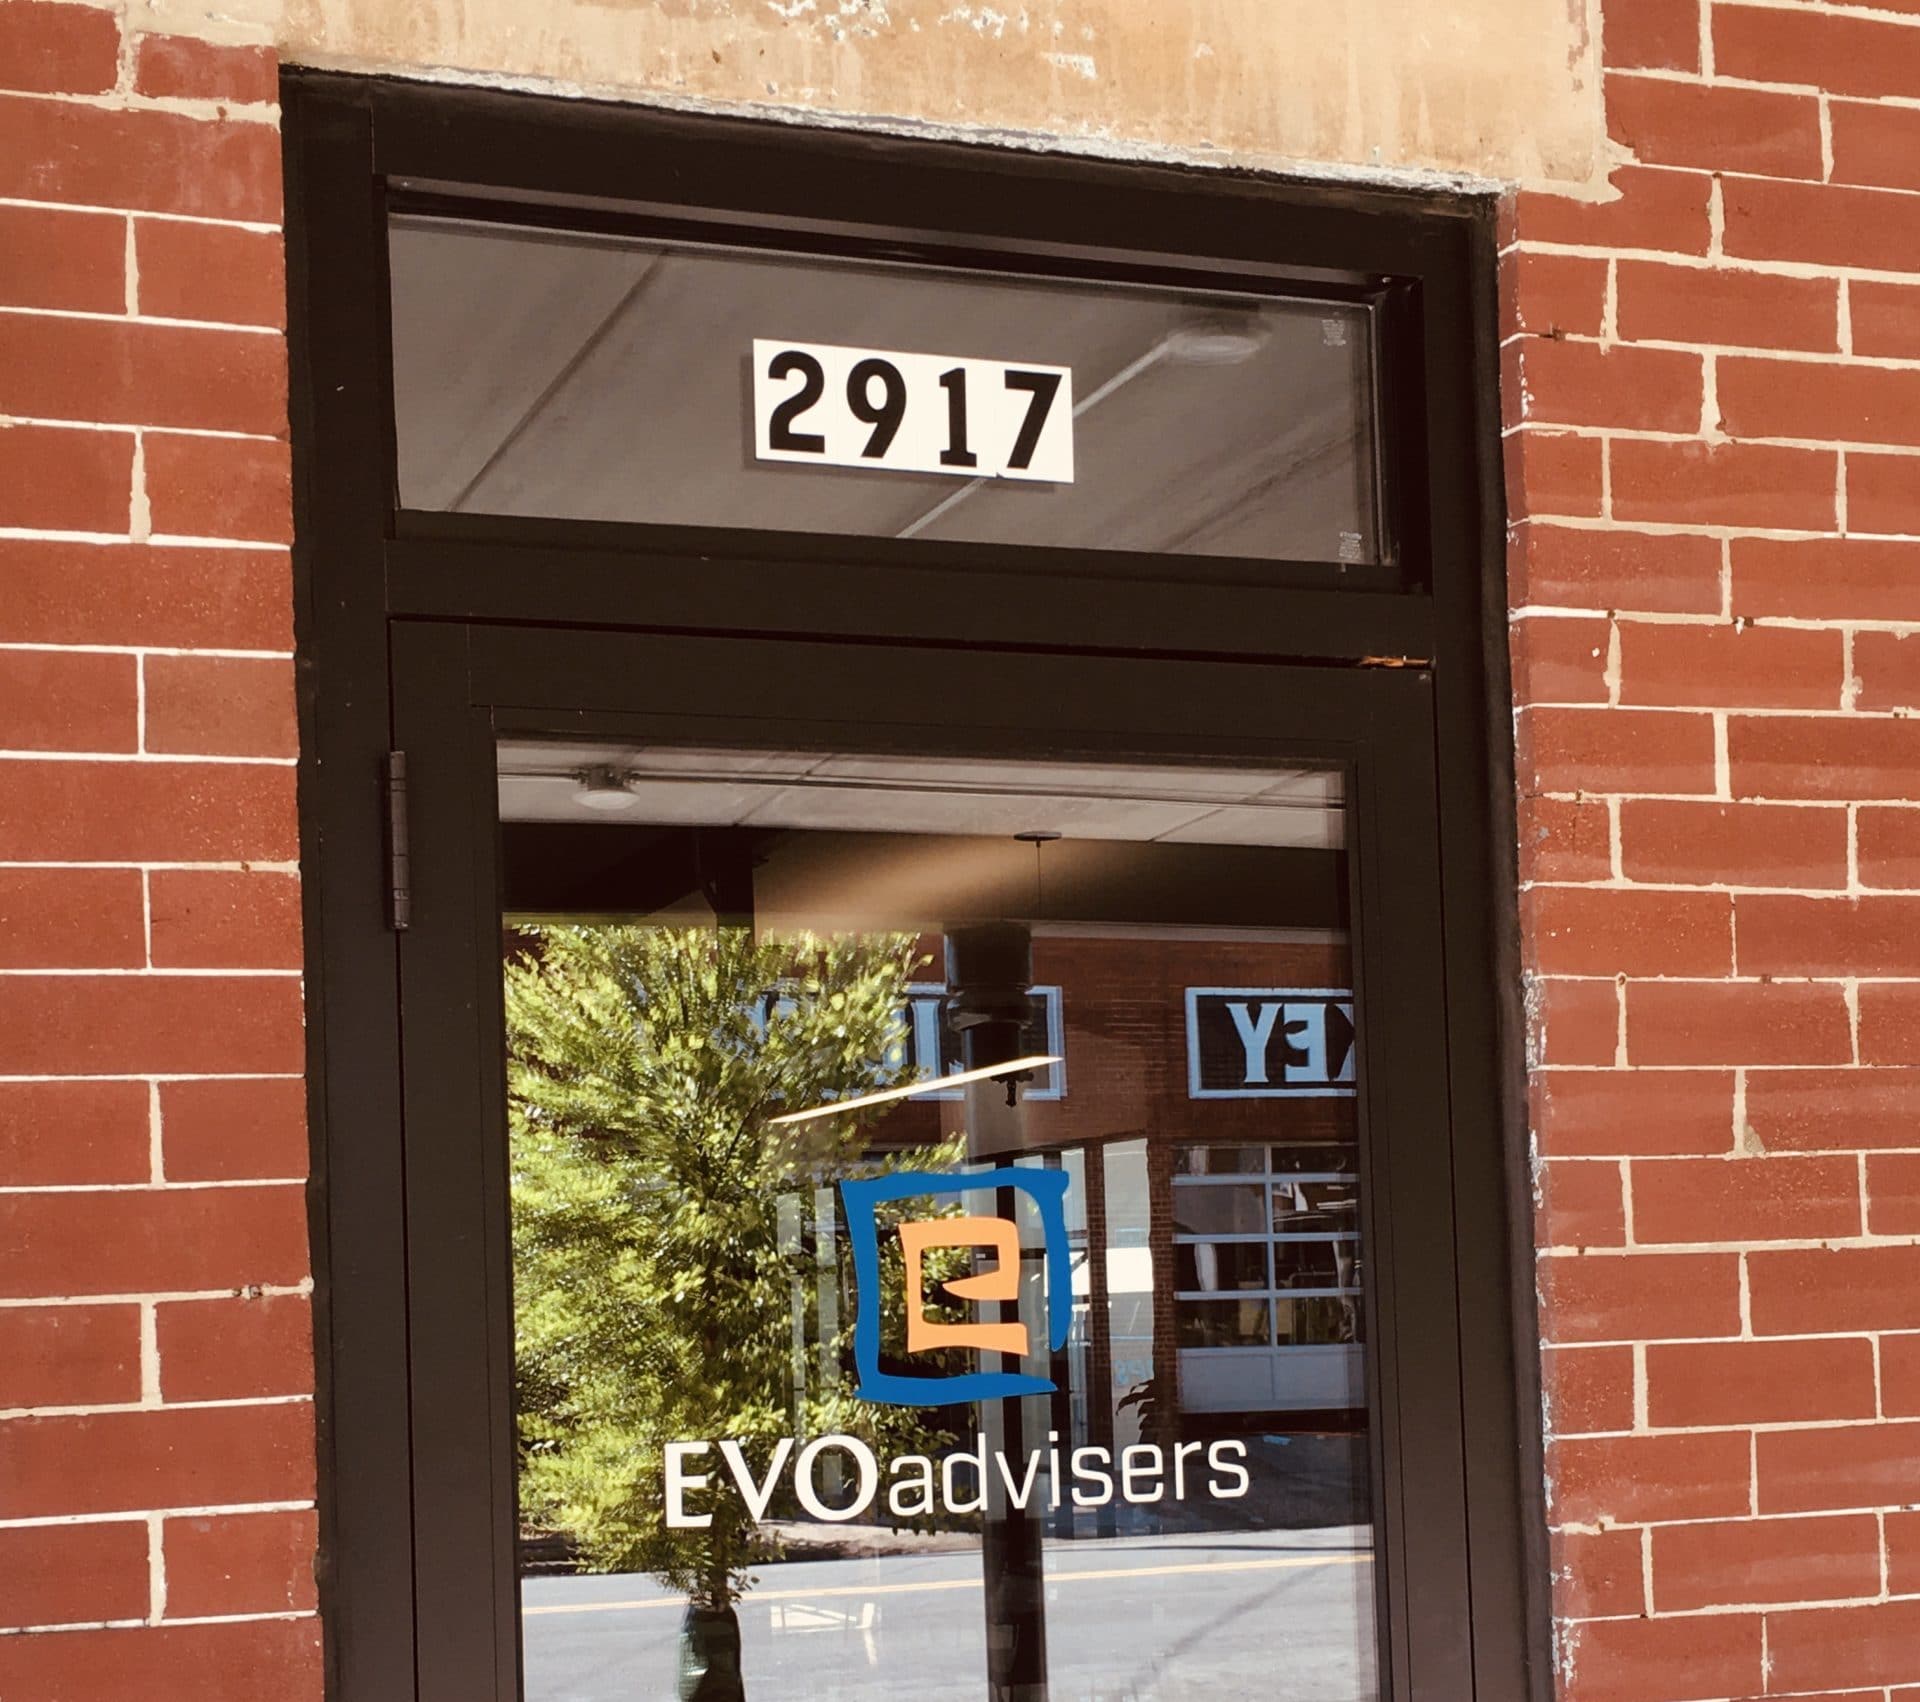 EVOadvisers Richmond Office, 2917 W Leigh St.